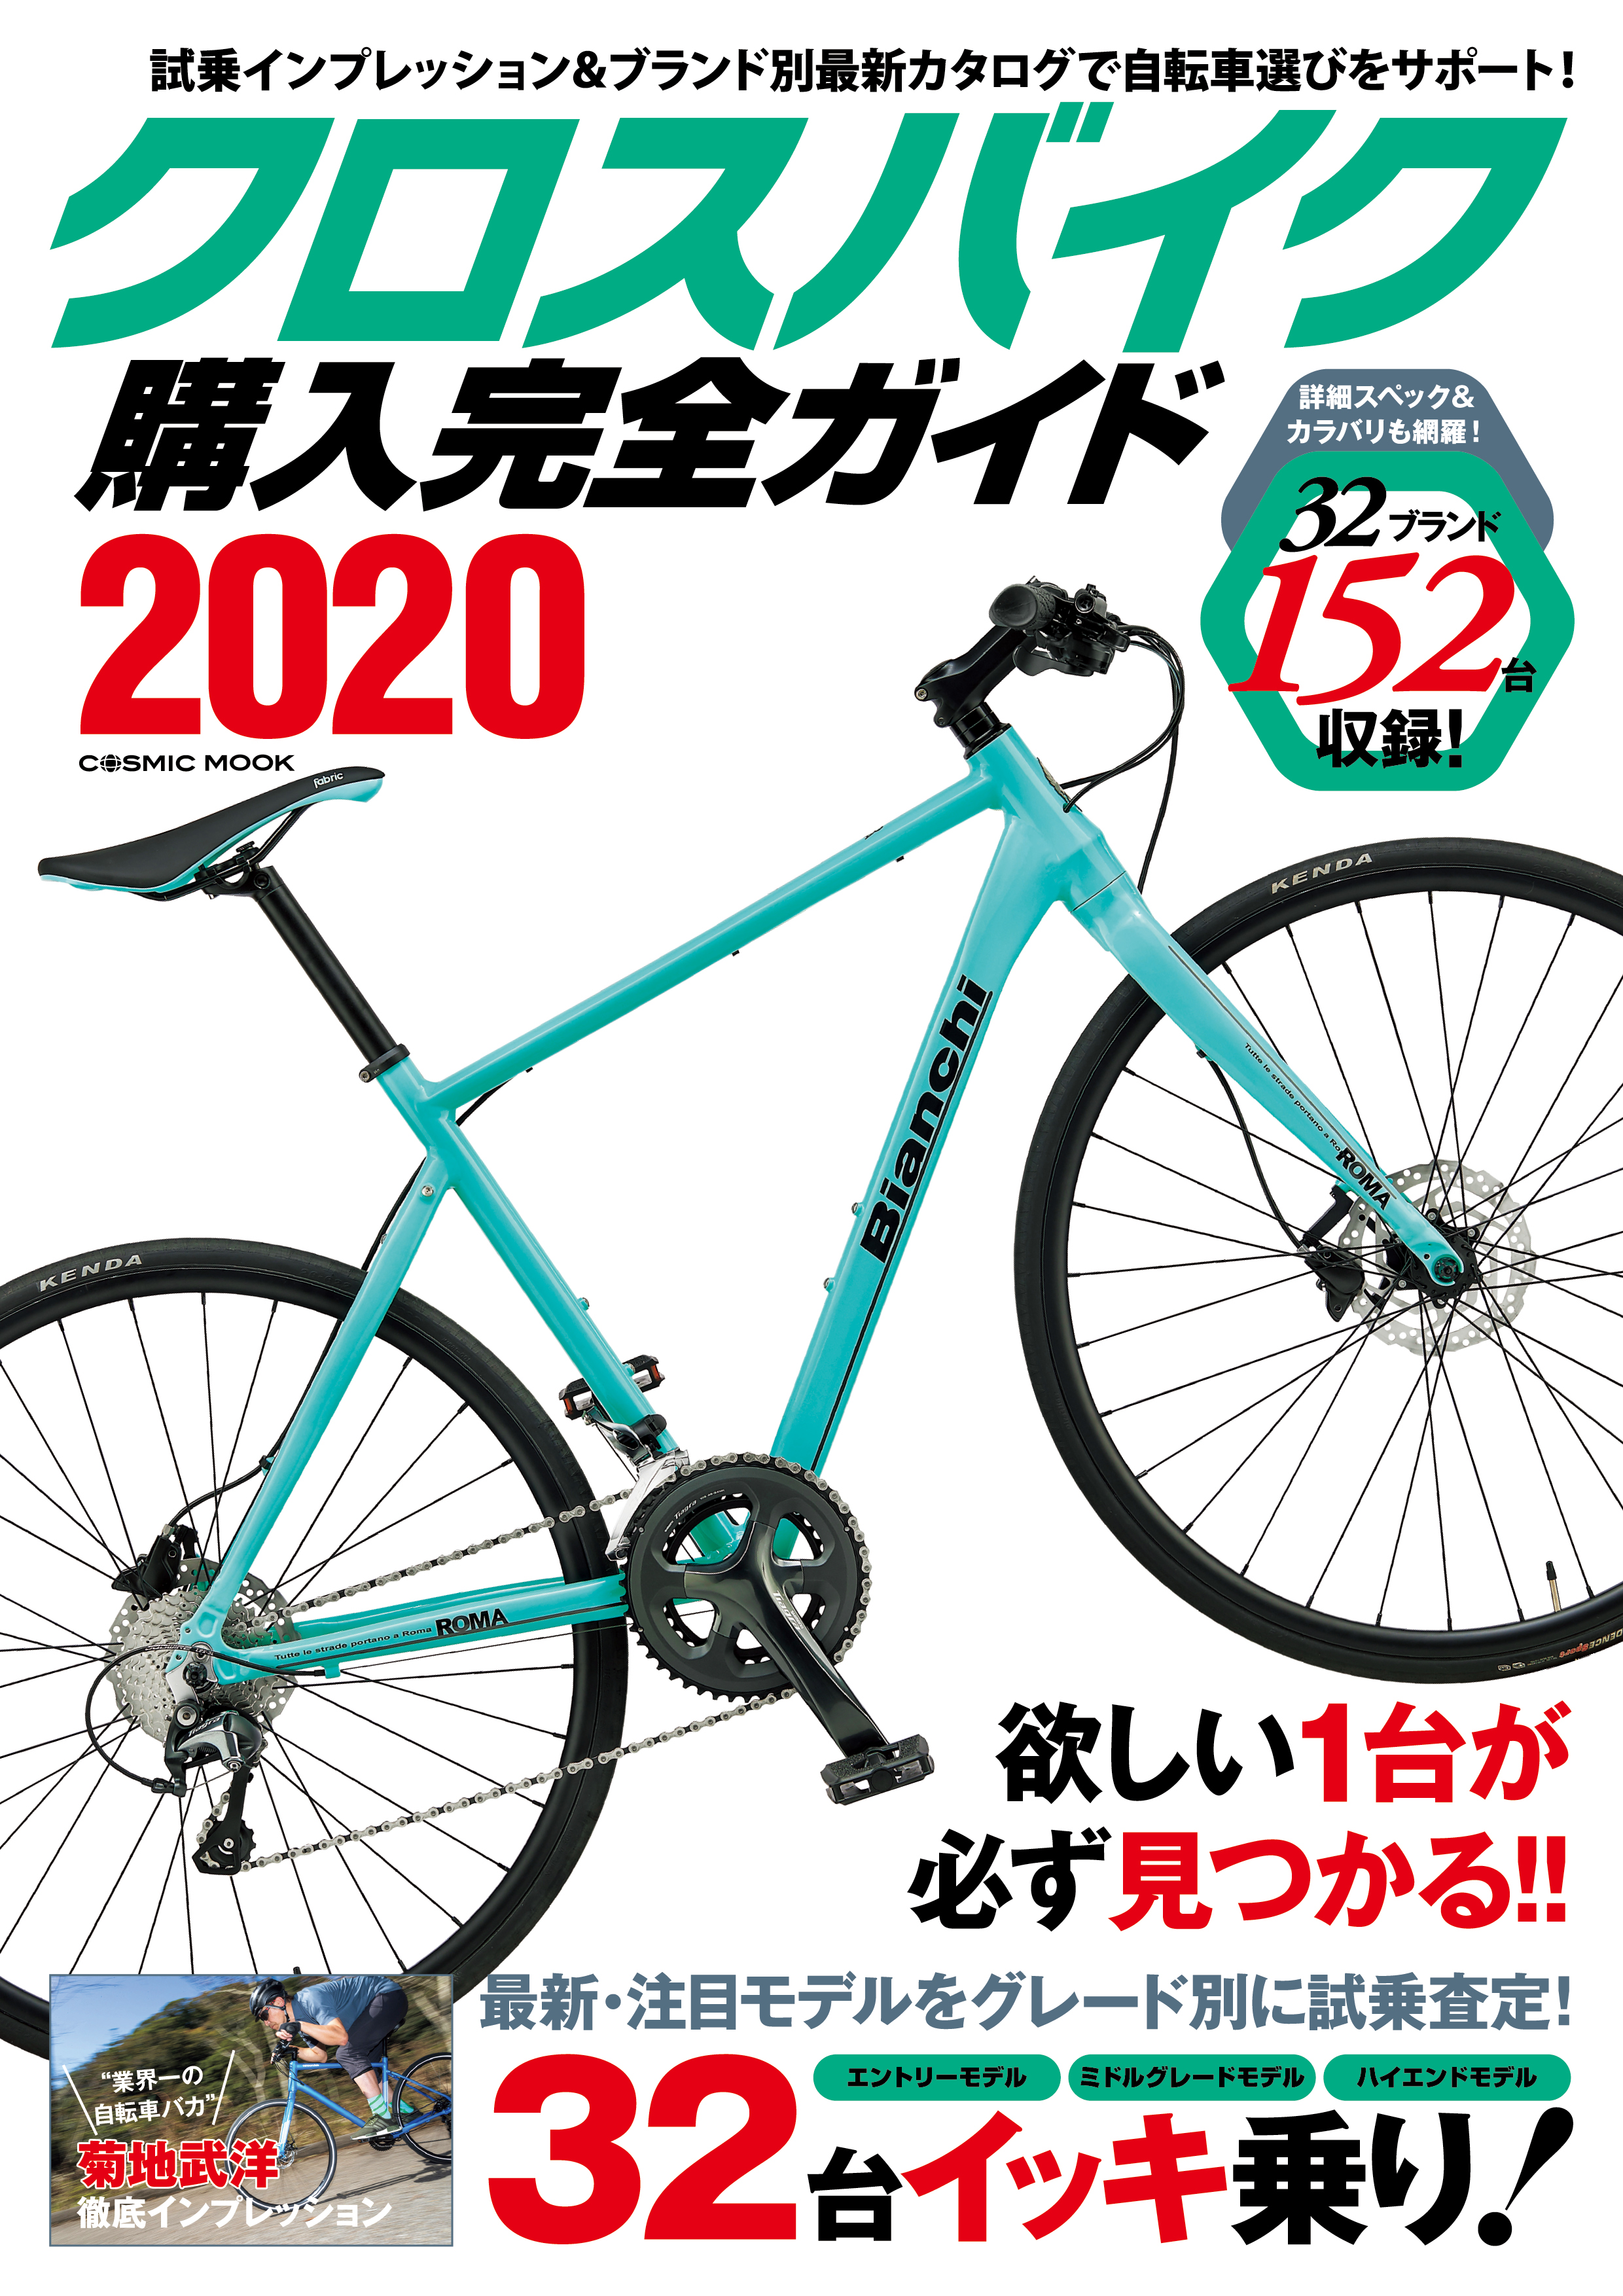 クロスバイク購入完全ガイド2020 - コスミック出版編集部 - 漫画・無料